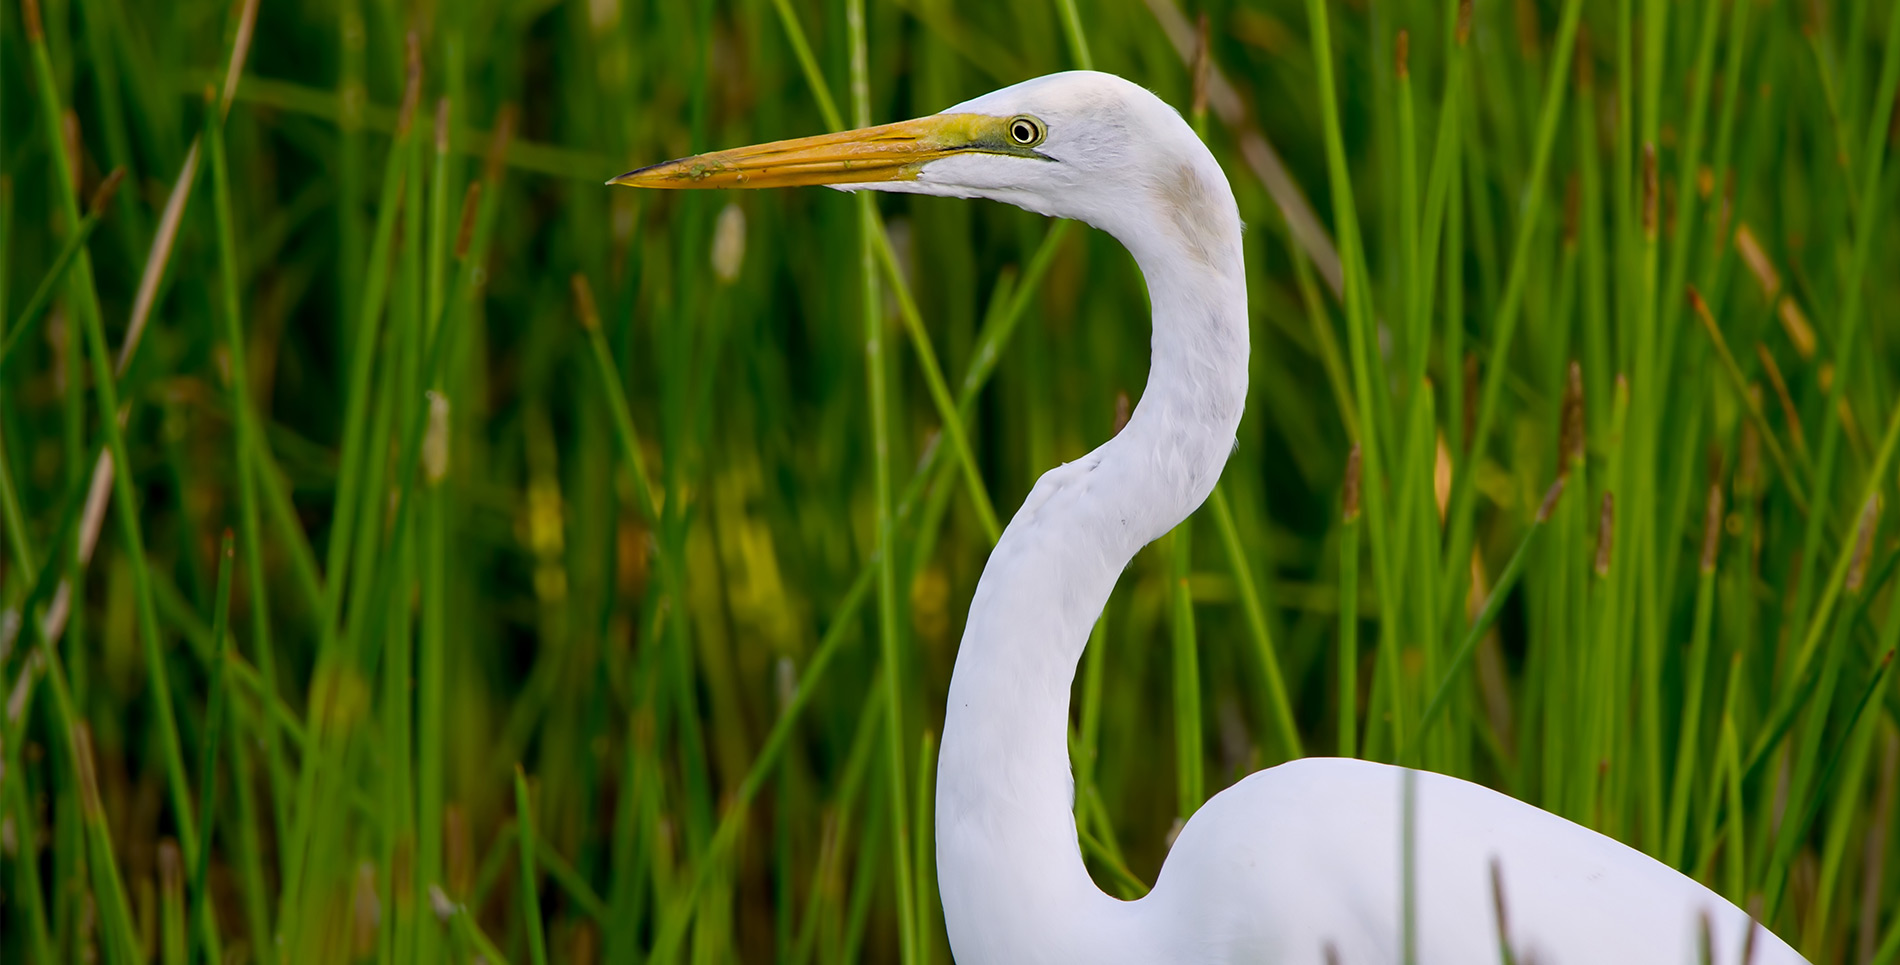 Great egret in natural everglades habitat